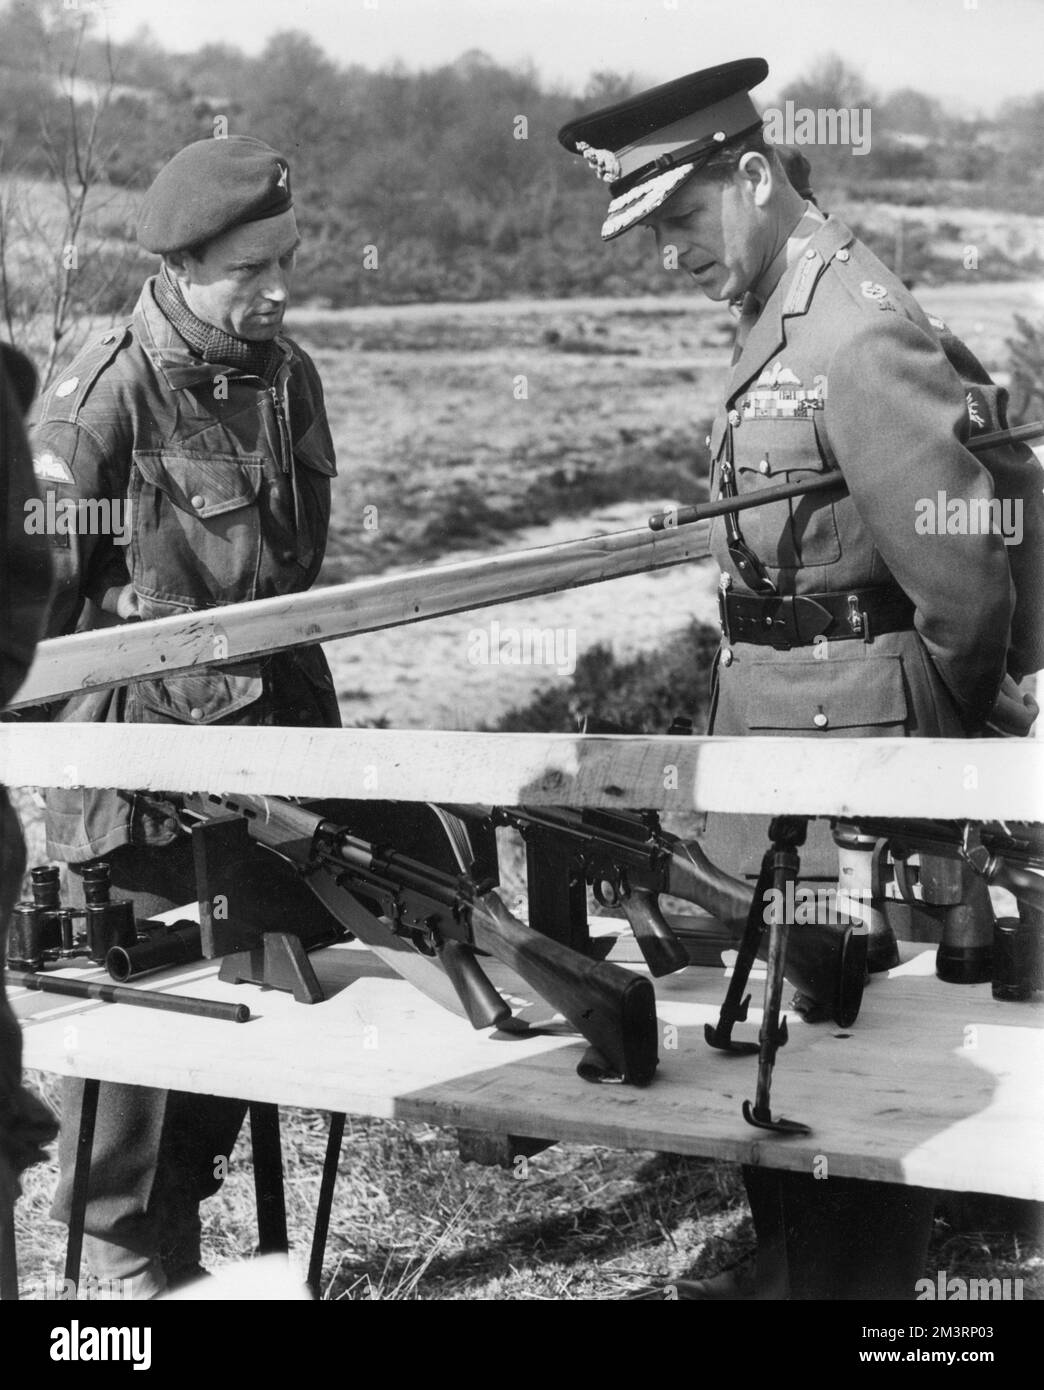 Il principe Filippo, Duca di Edimburgo, ispezionando le armi dei paracadutisti in una stazione dimostrativa di addestramento a Caesars Camp, Aldershot, il 15 aprile 1955, quando visitò il 16th° gruppo della Brigata indipendente del paracadute. Data: 1955 Foto Stock